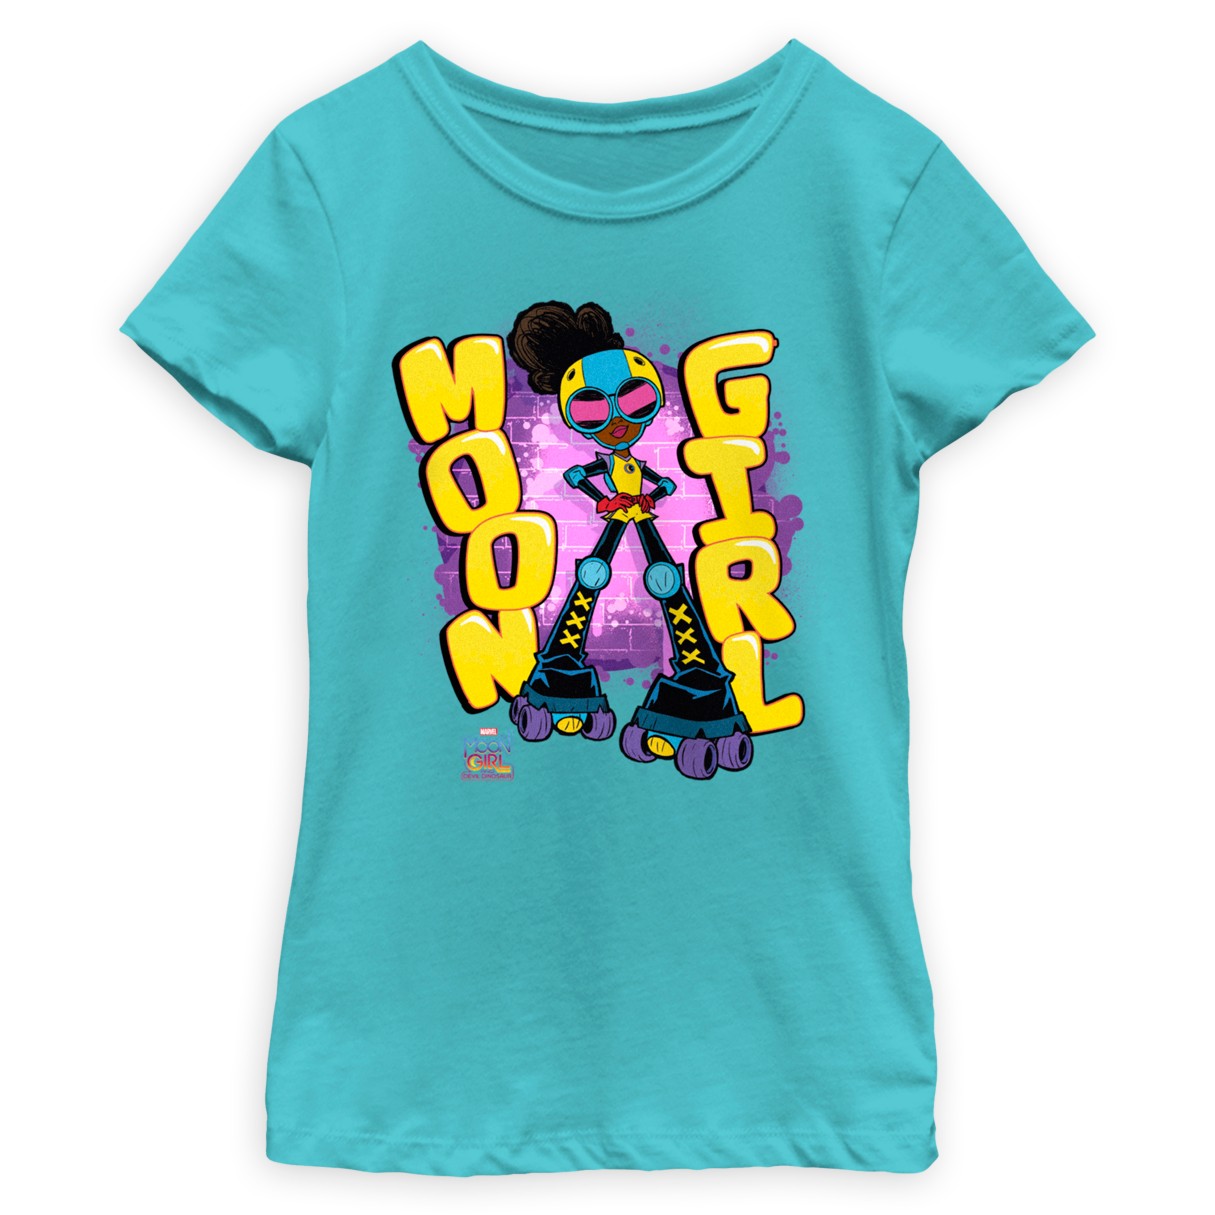 Girl T-Shirt for Kids – Moon Girl and Devil Dinosaur shopDisney